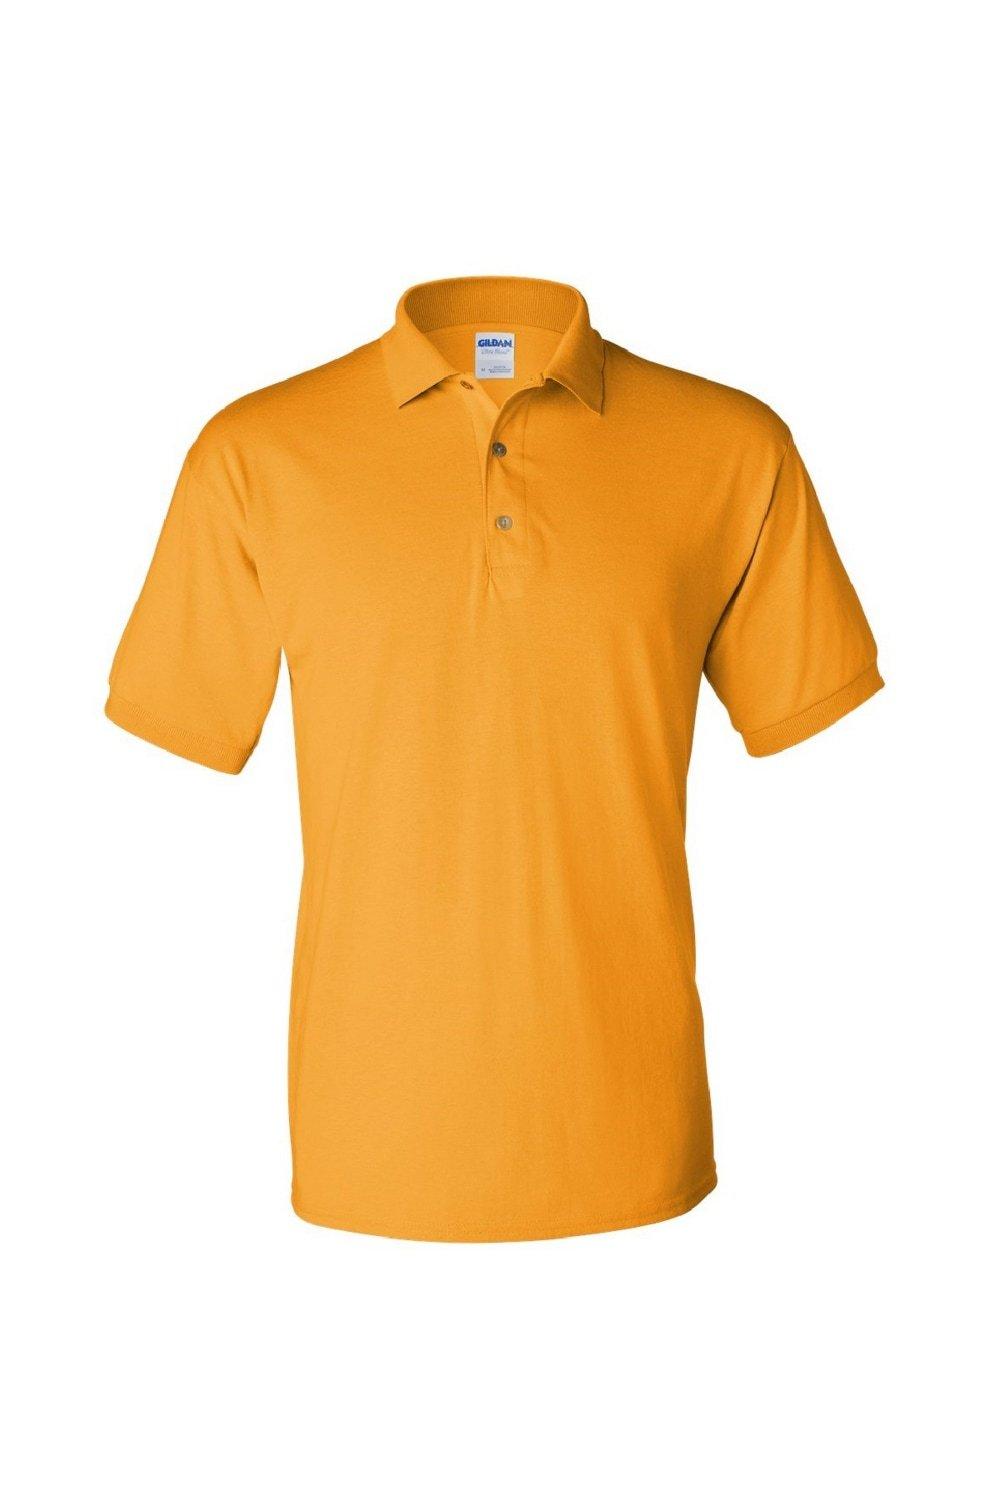 Рубашка поло из джерси DryBlend для взрослых с короткими рукавами Gildan, золото